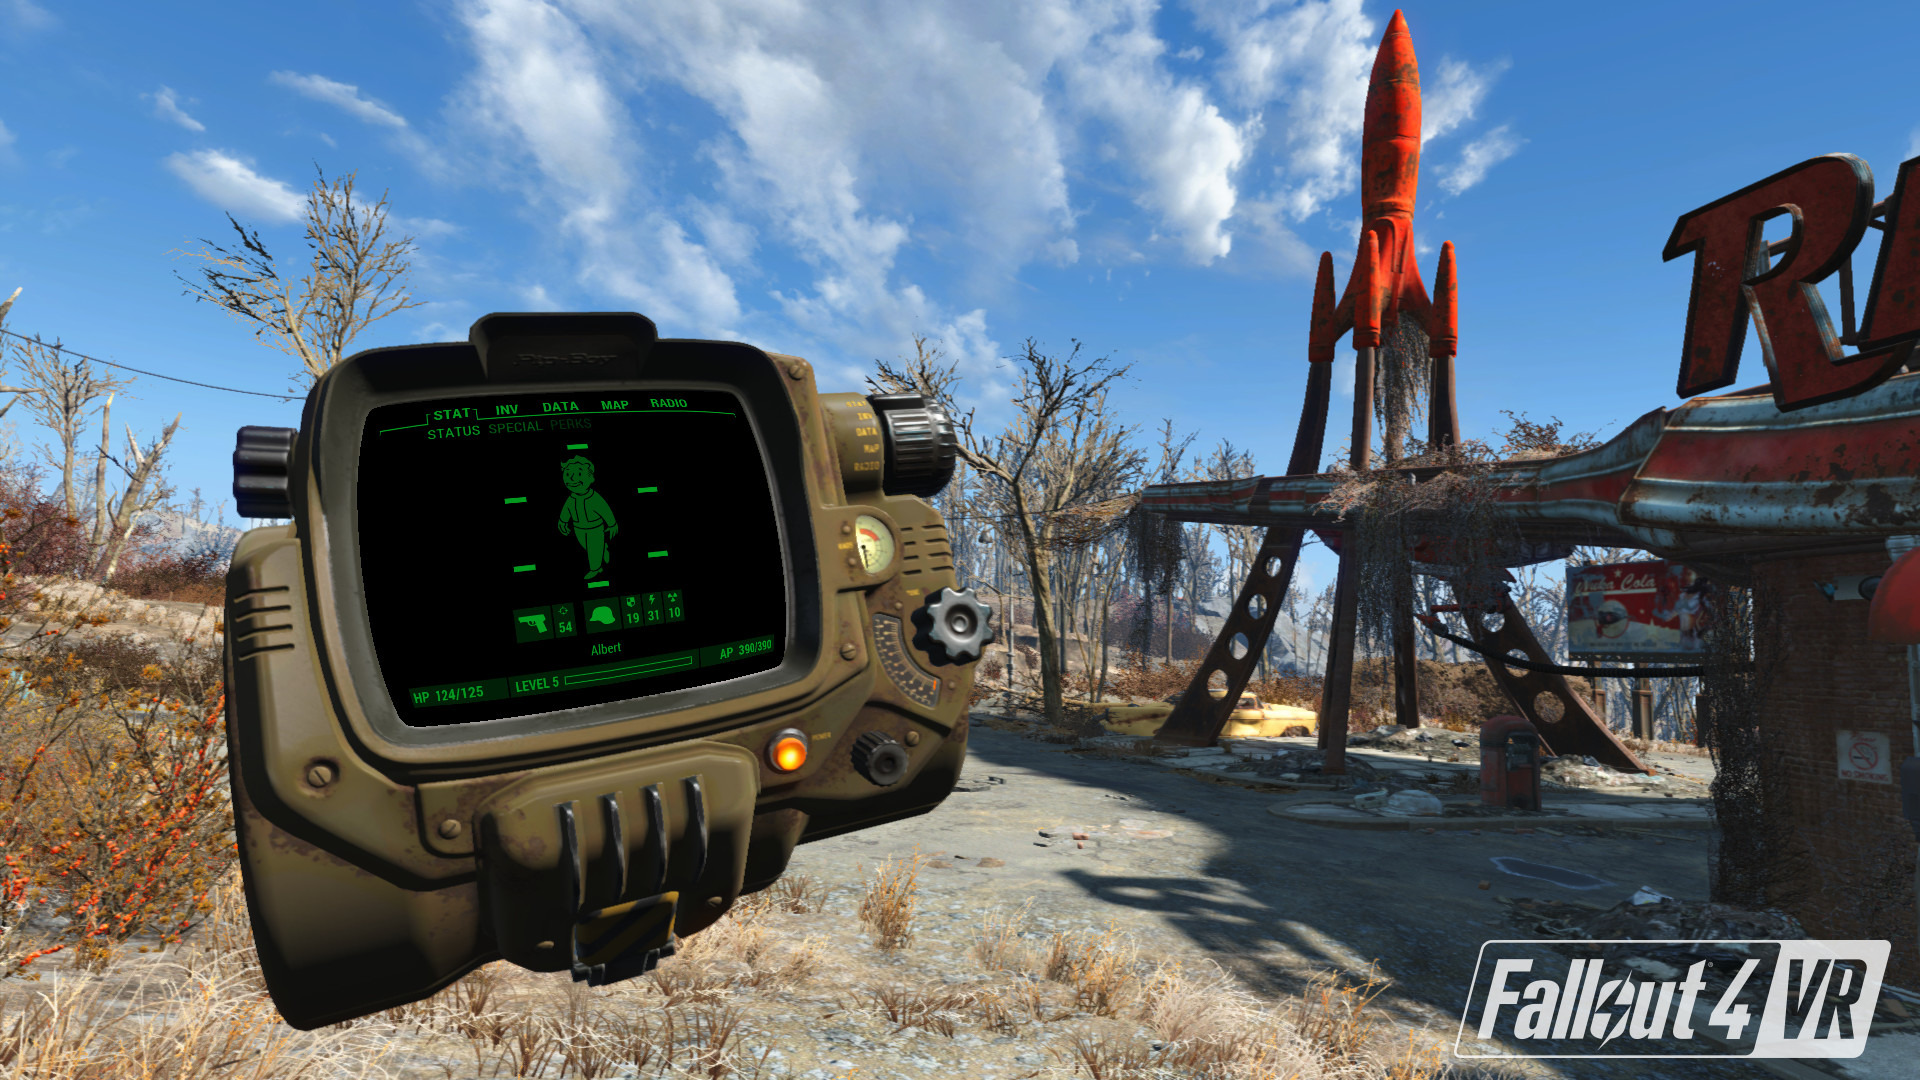 荒野に飛び込め Fallout 4 Vr 配信開始 Steamvr Home 向けにコラボアイテムも追加 Game Spark 国内 海外ゲーム情報サイト